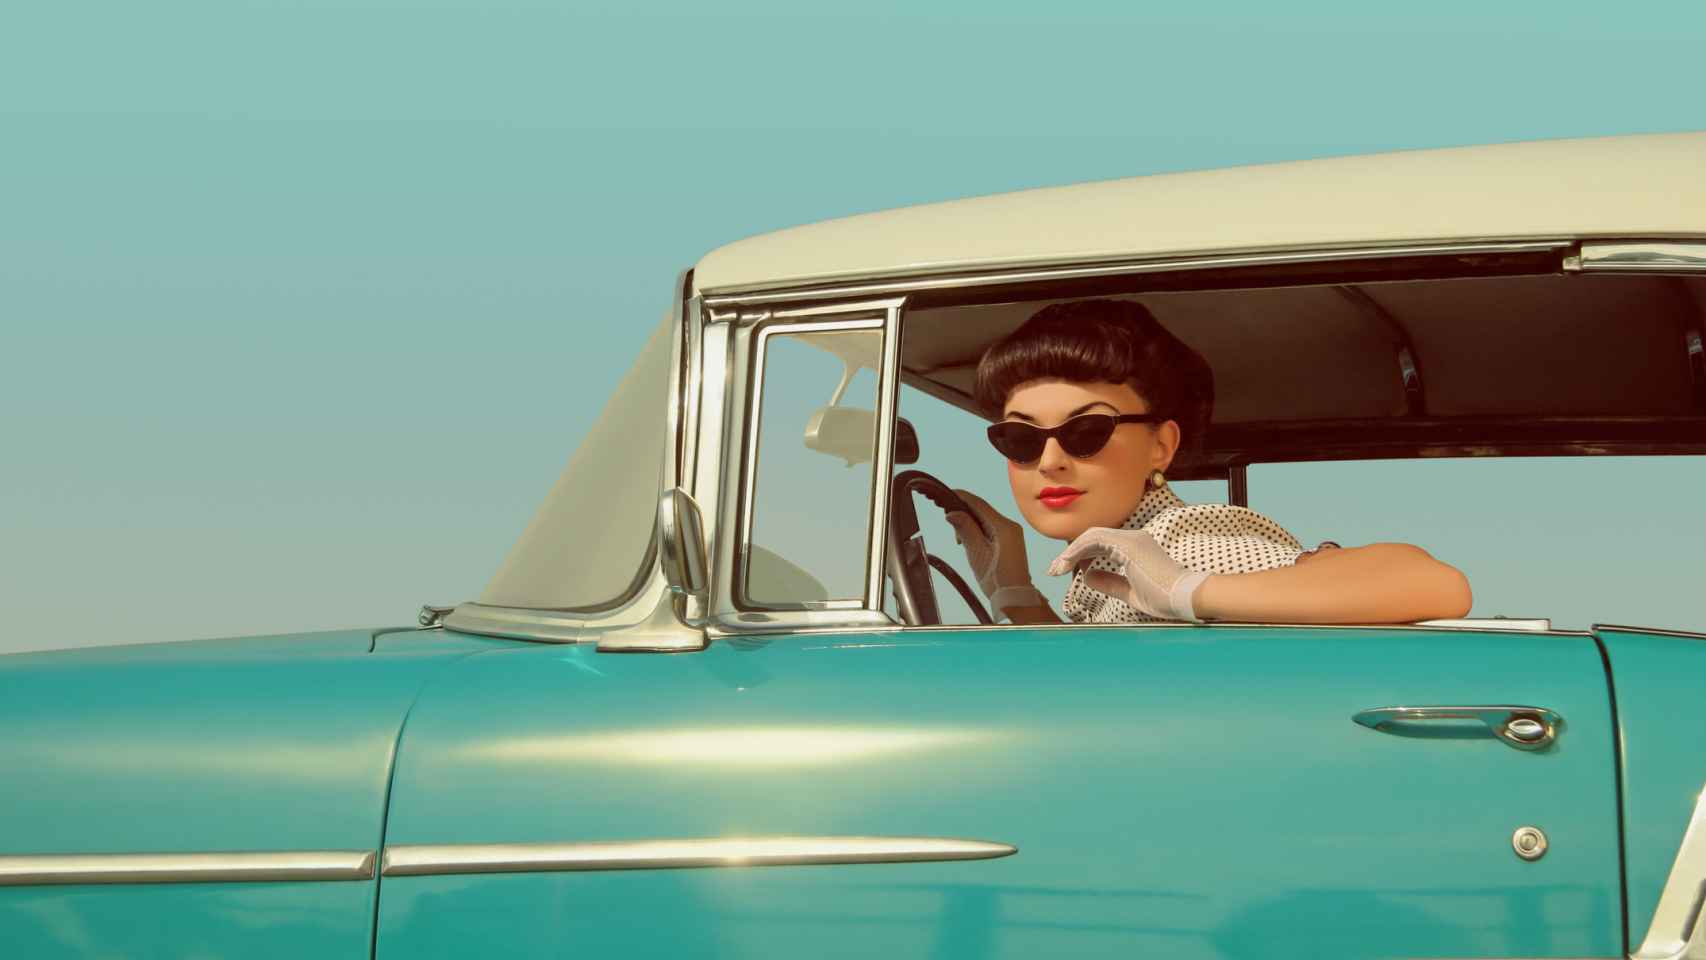 Mujer del s.XX en el coche.